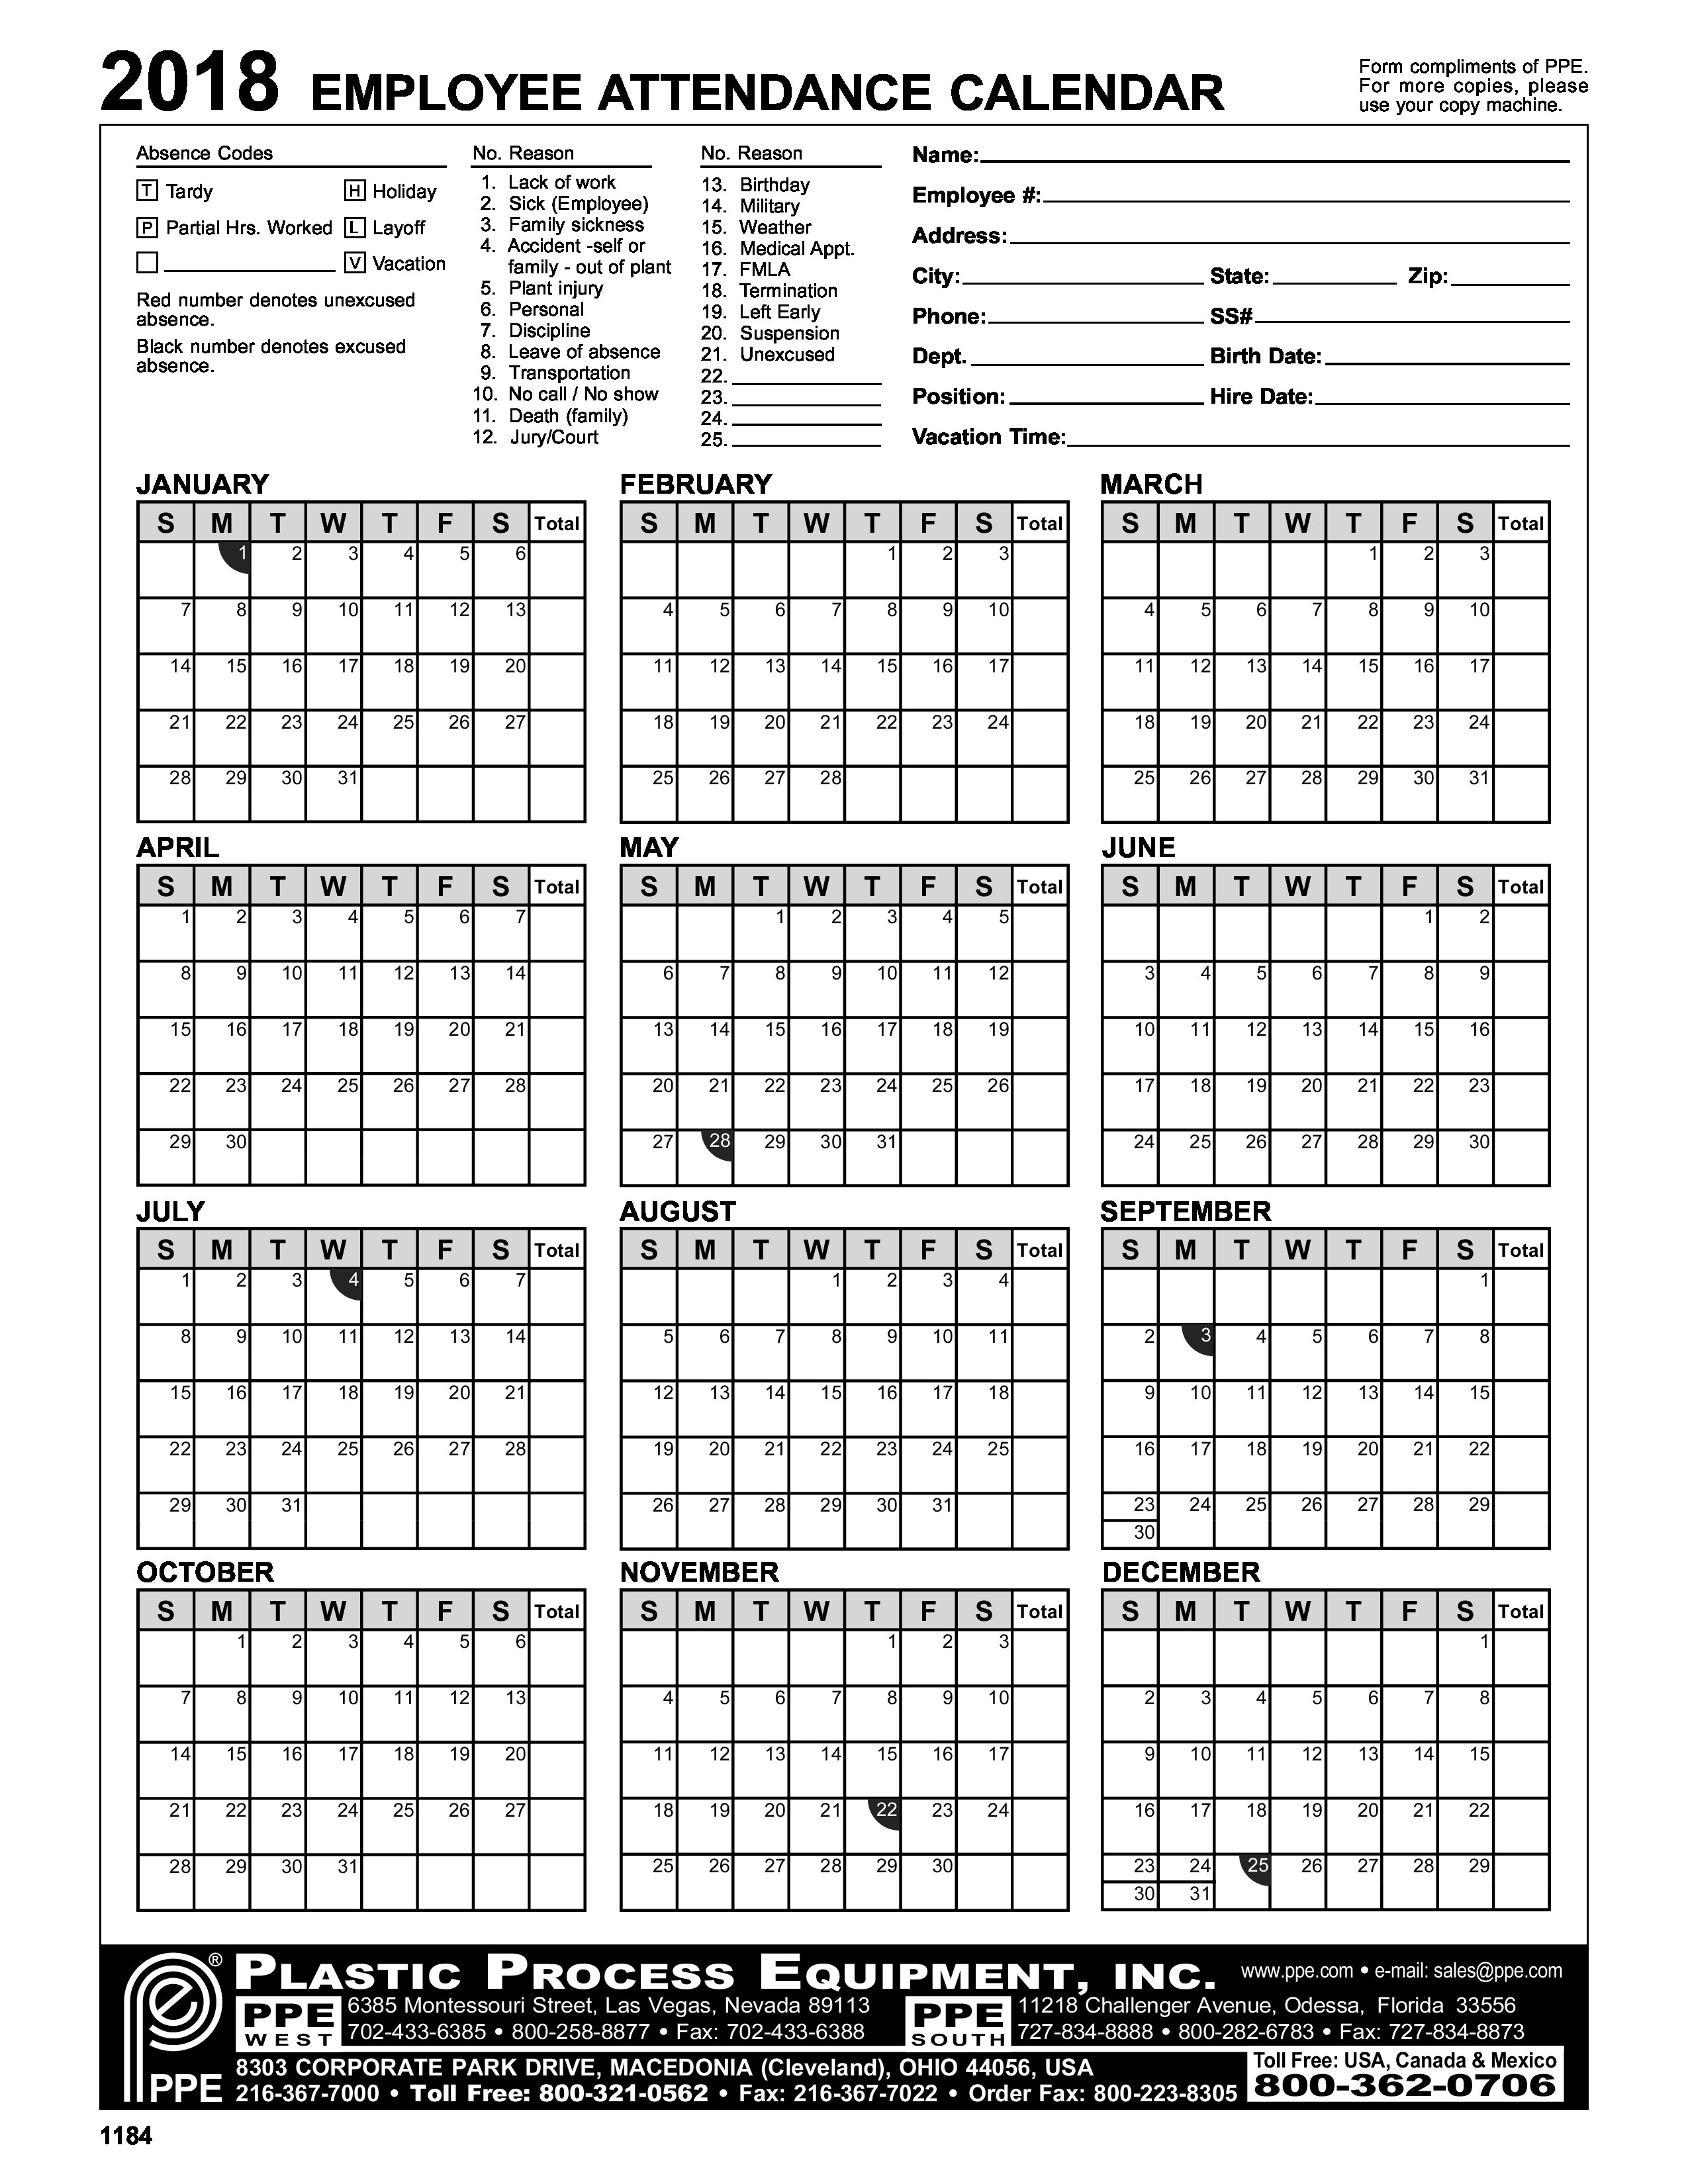 2018 Employee Attendance Calendar With Employee Attendance-Attendance Calendar Template Free